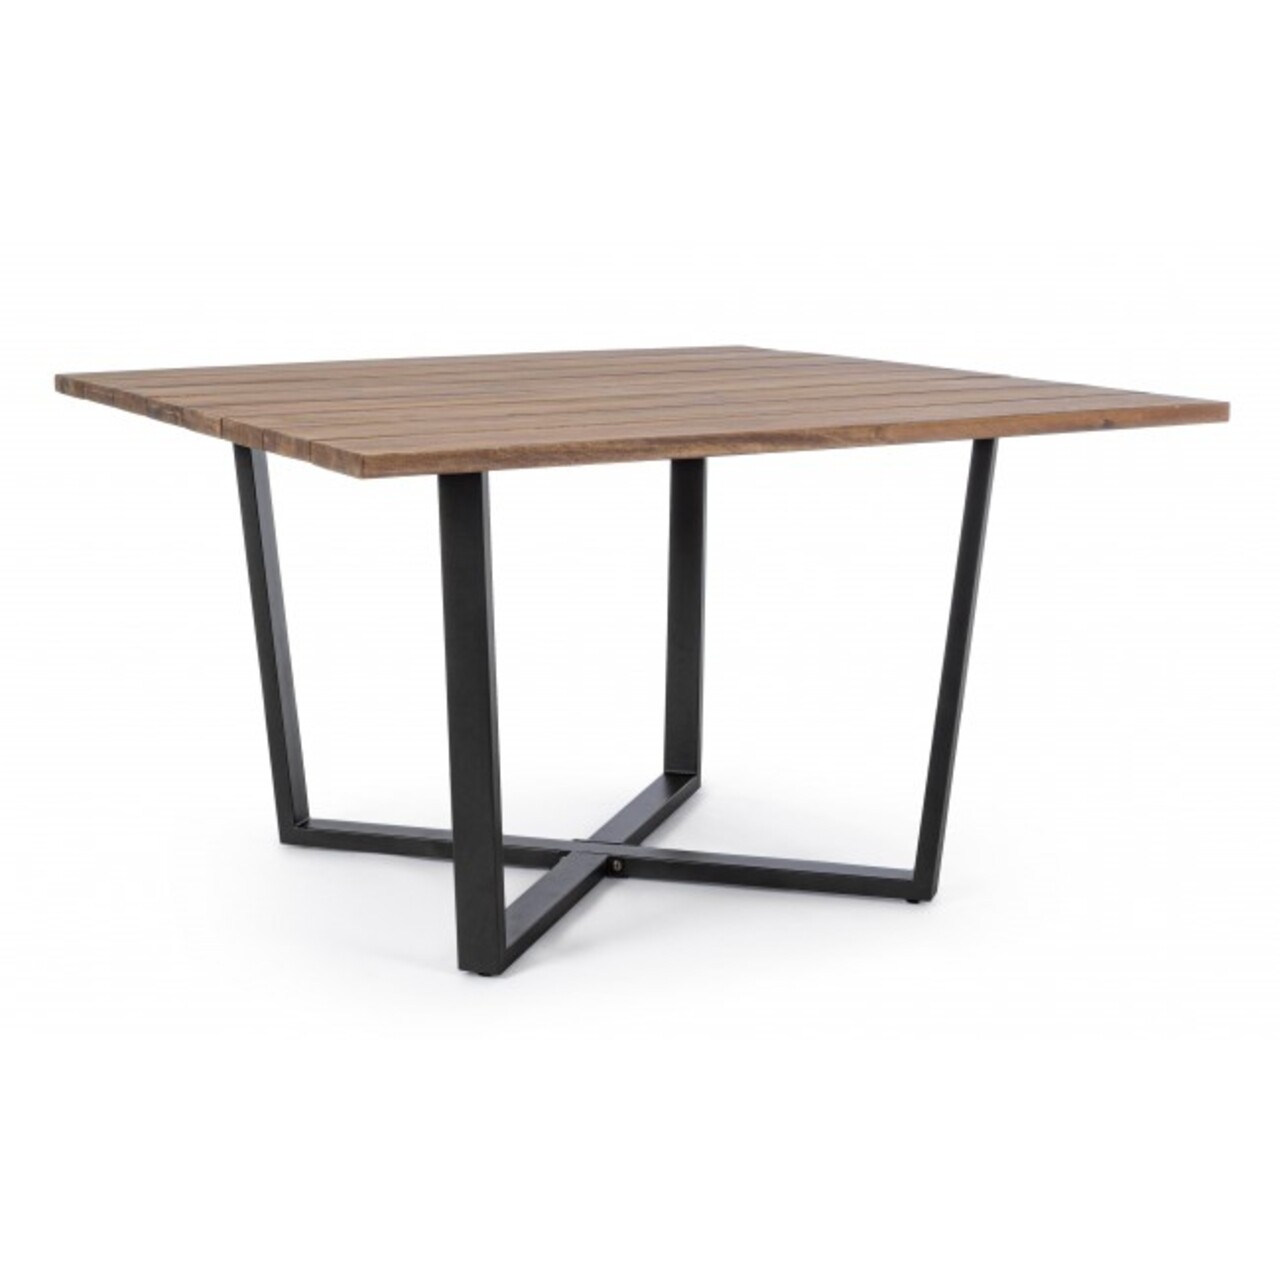 Helsinki kerti asztal, bizzotto, 130x130x75 cm, akácfa/acél, szénszürke/természetes